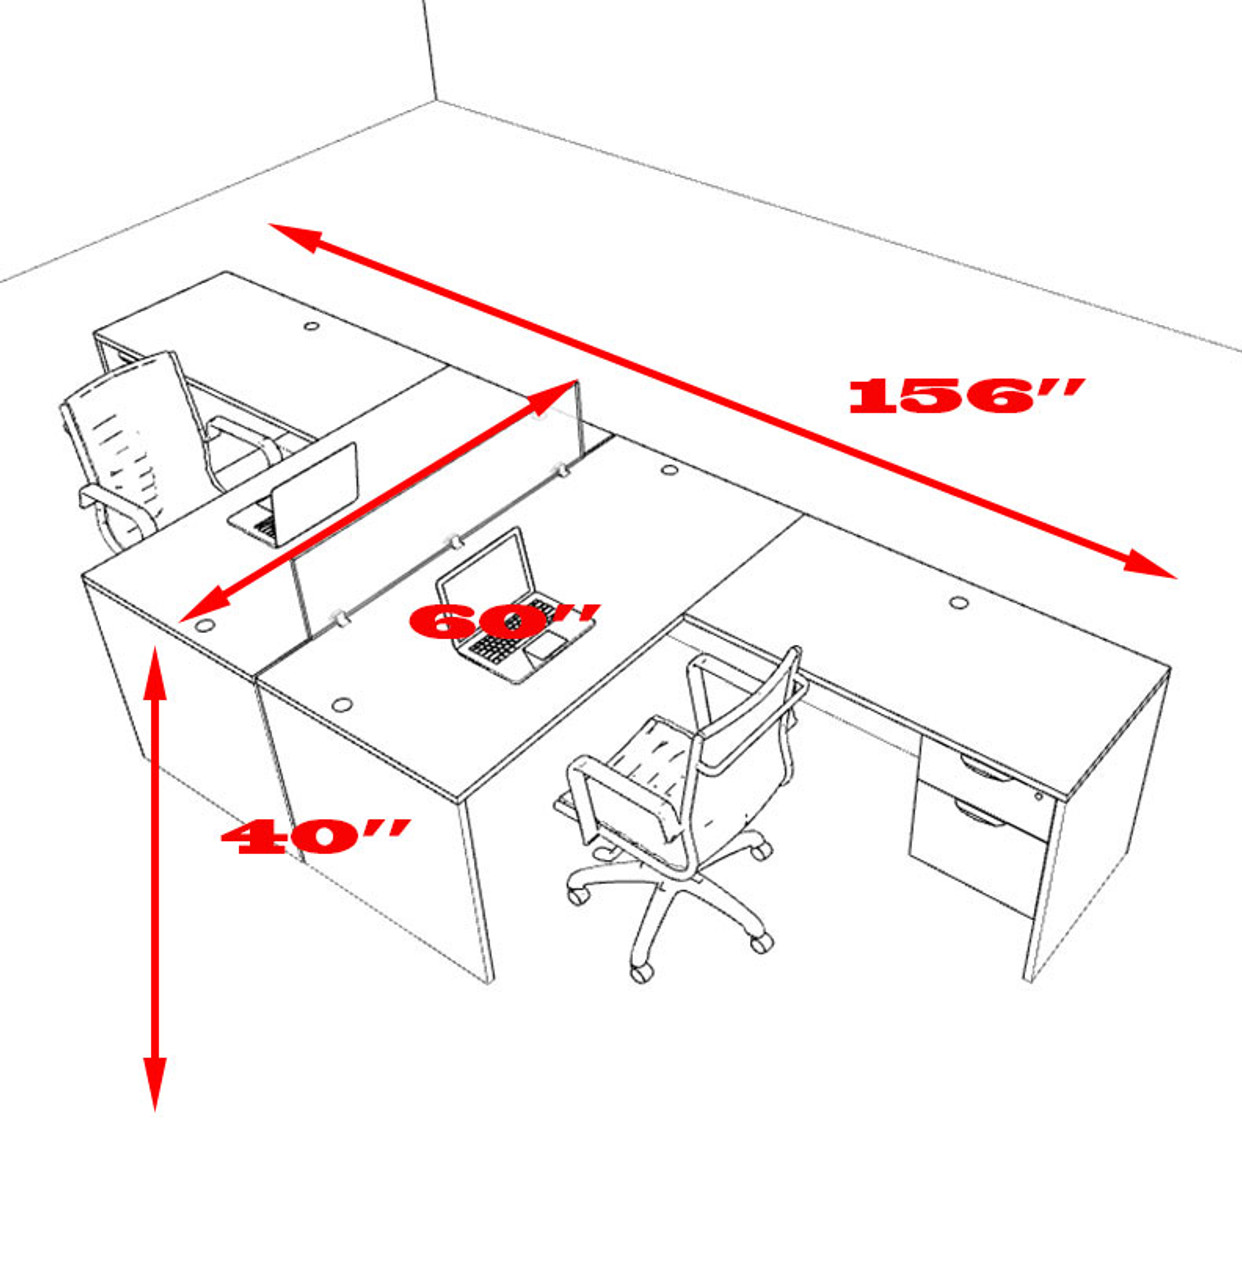 Two Person Modern Accoustic Divider Office Workstation Desk Set, #OT-SUL-FPRG38